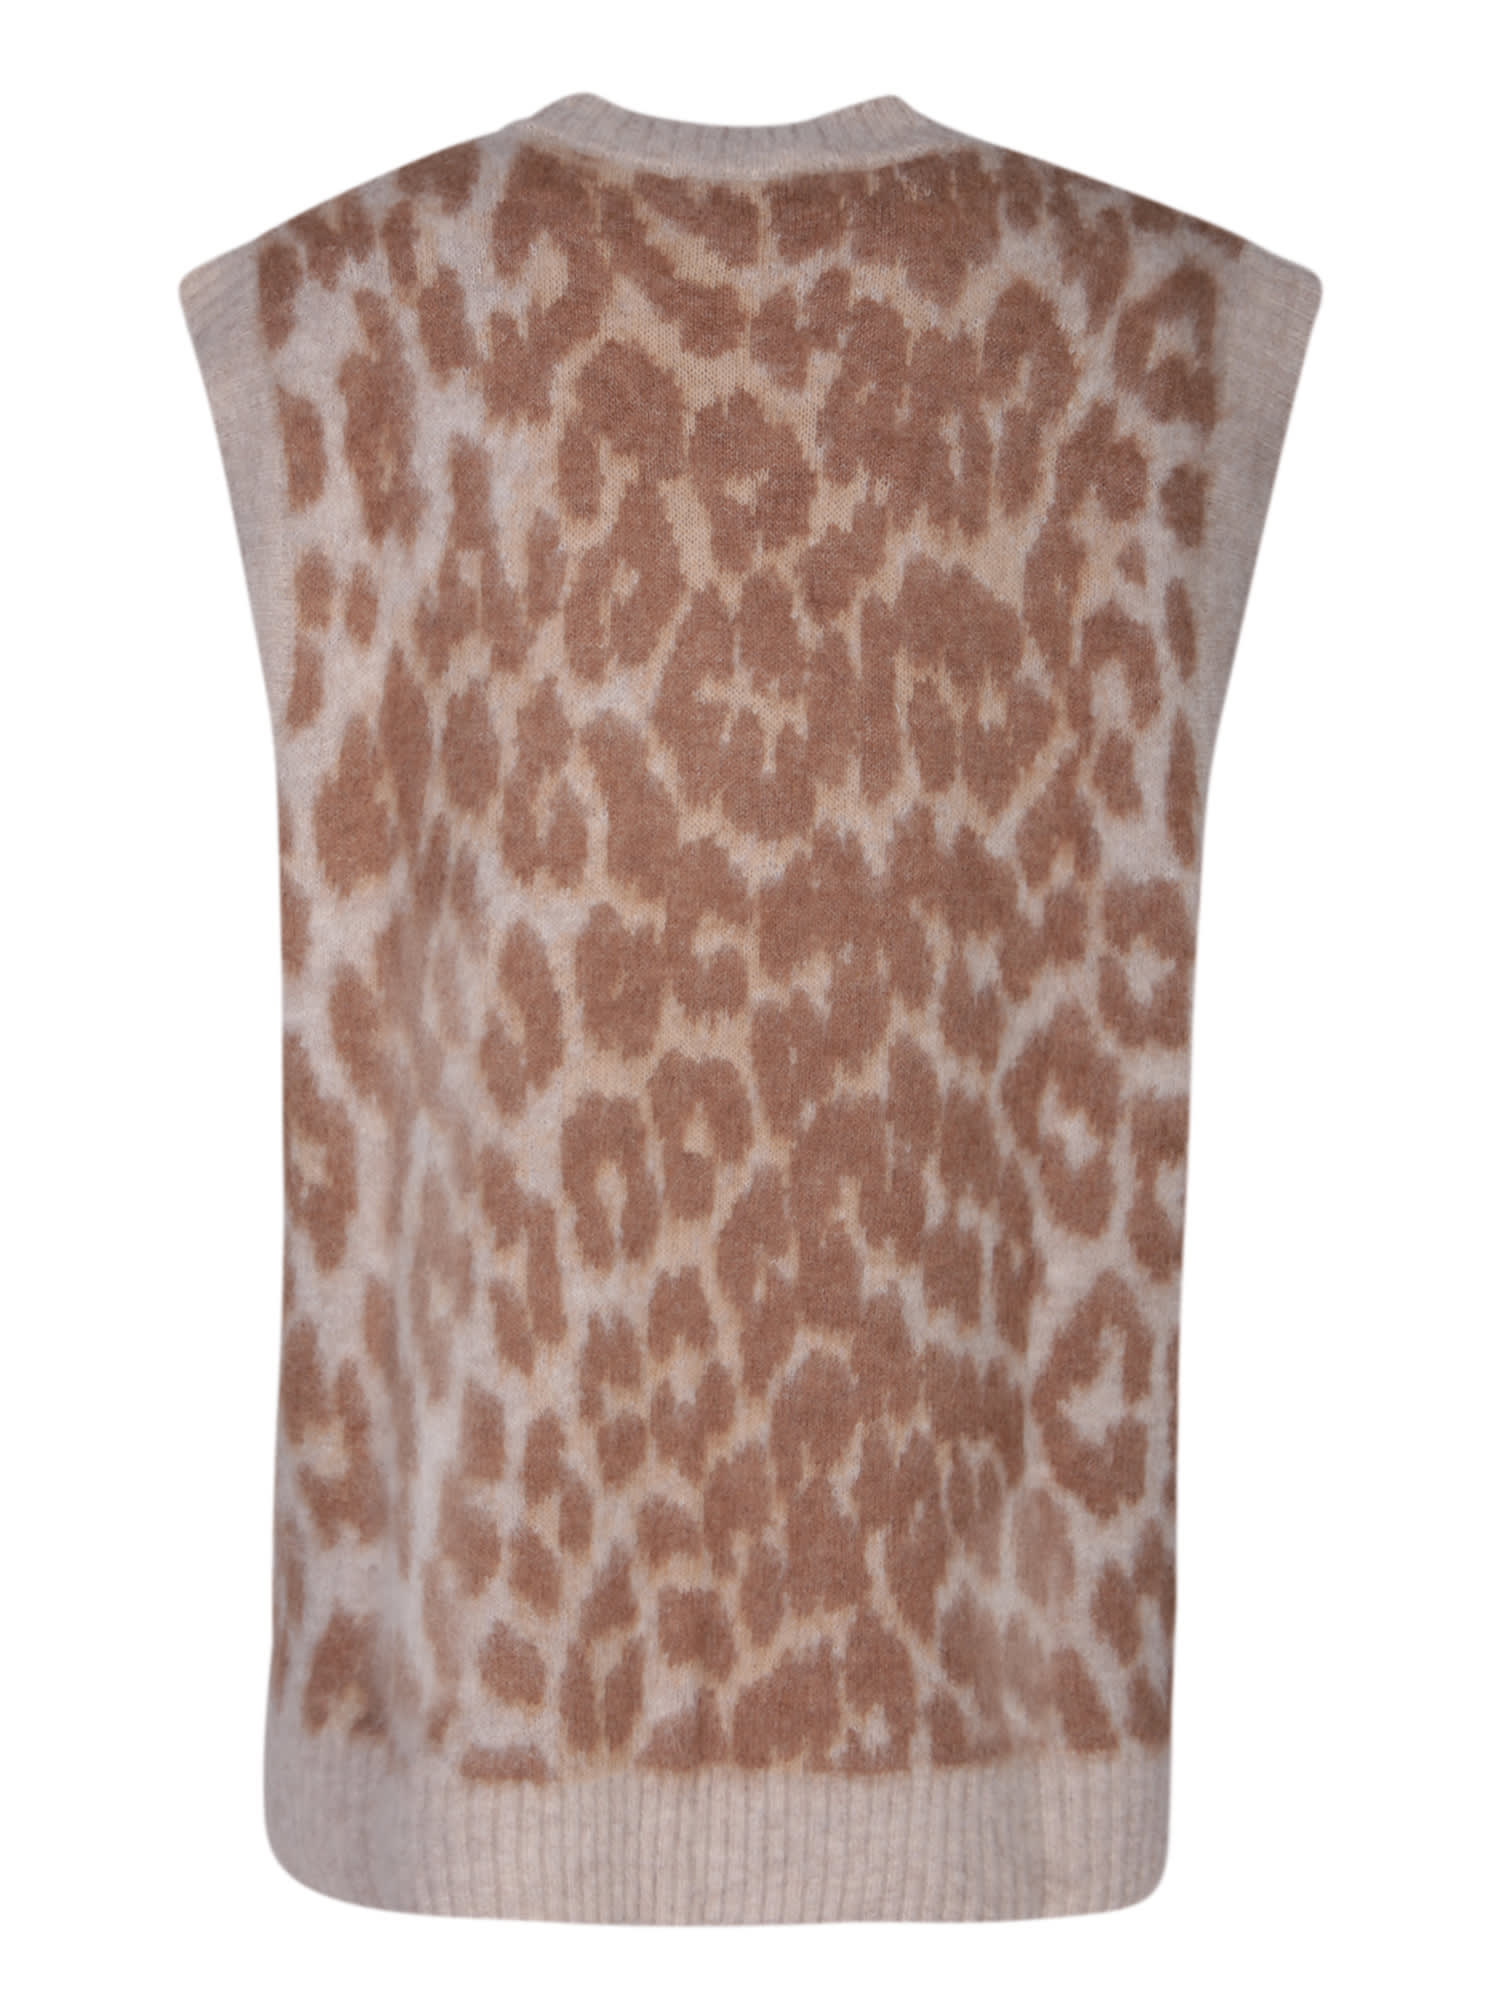 Shop Ganni Jacquard Leopard Vest In Beige